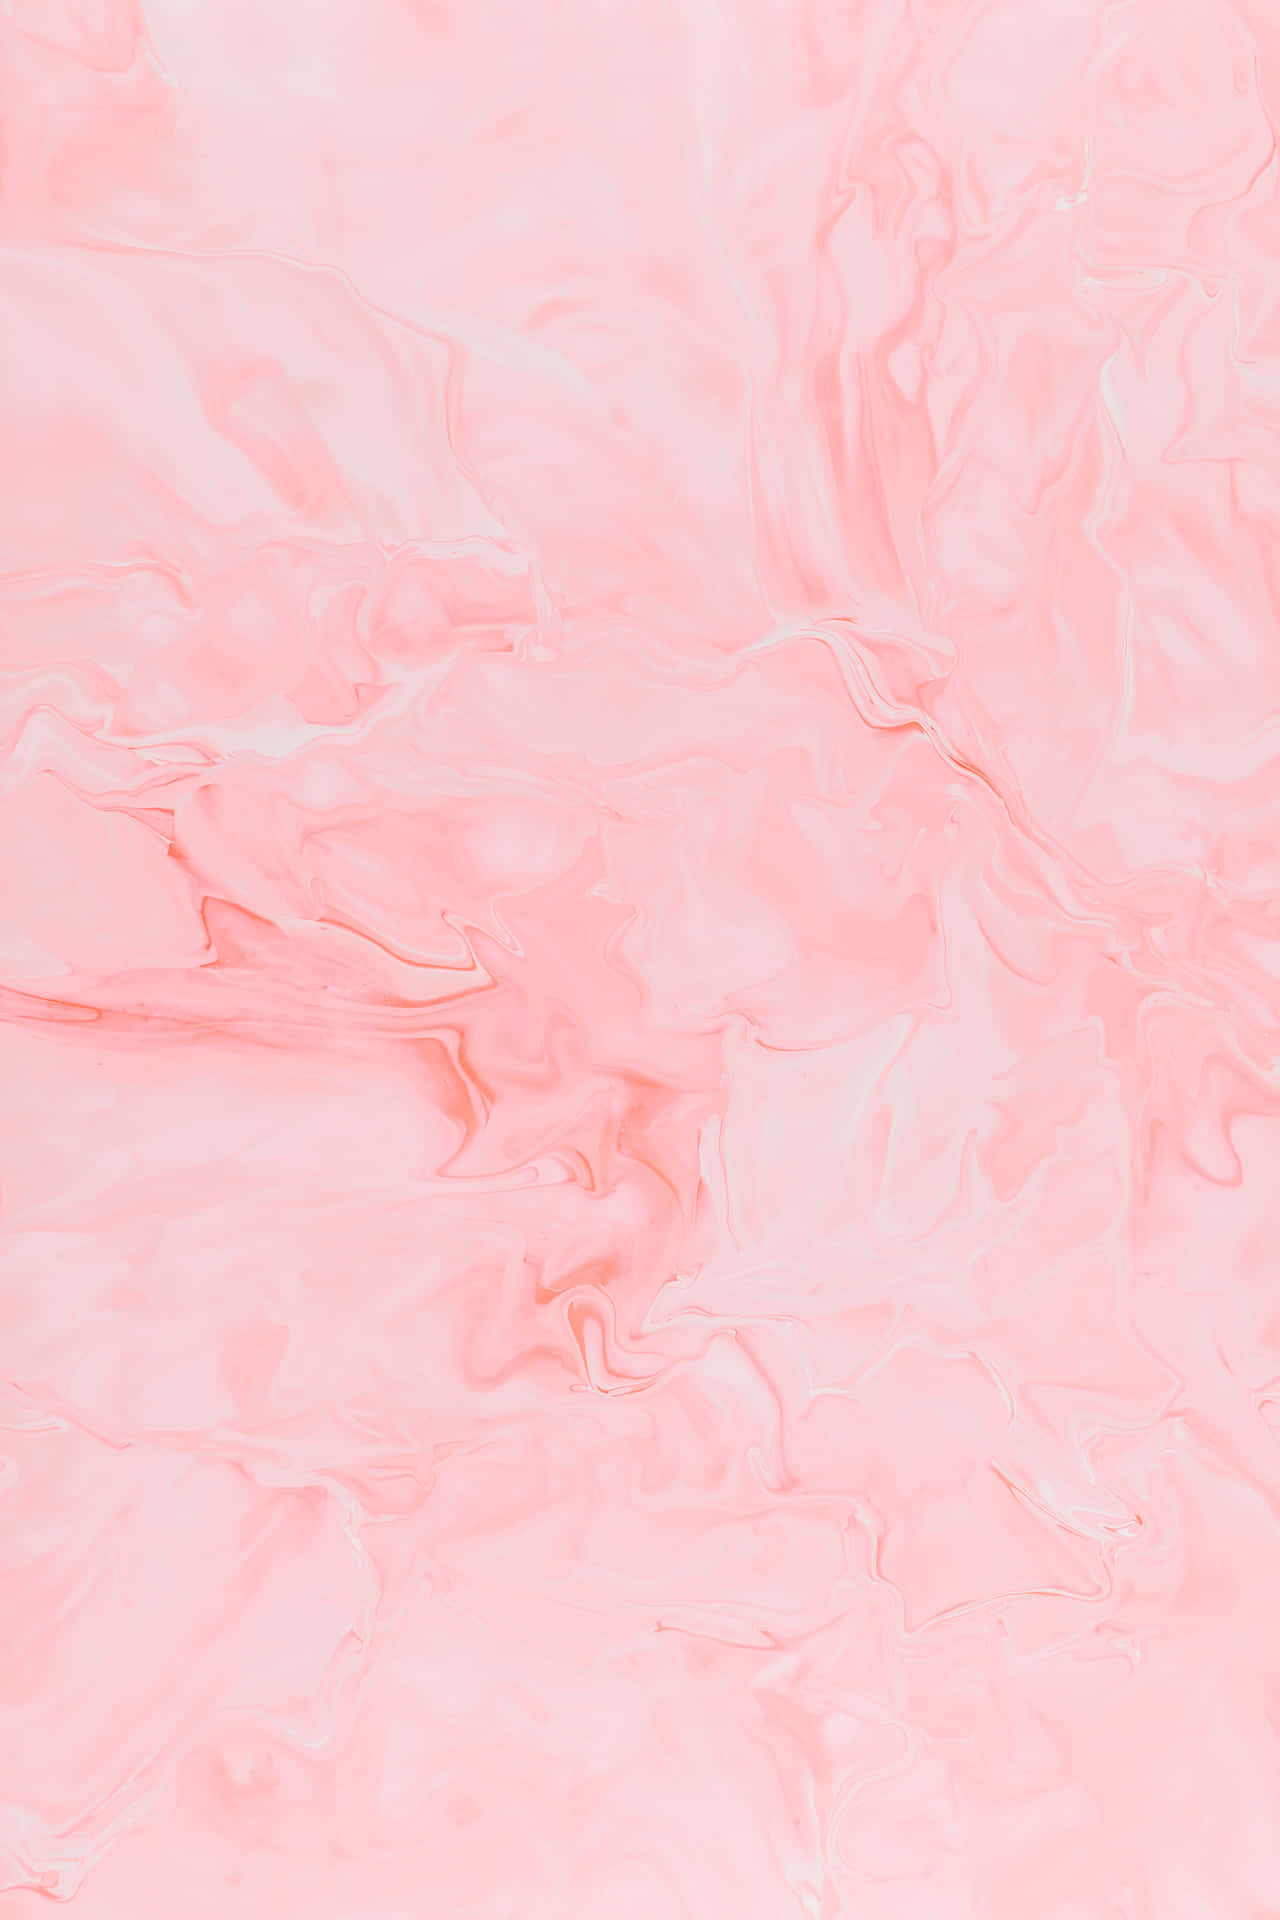 Gentle Pastel Pink Background